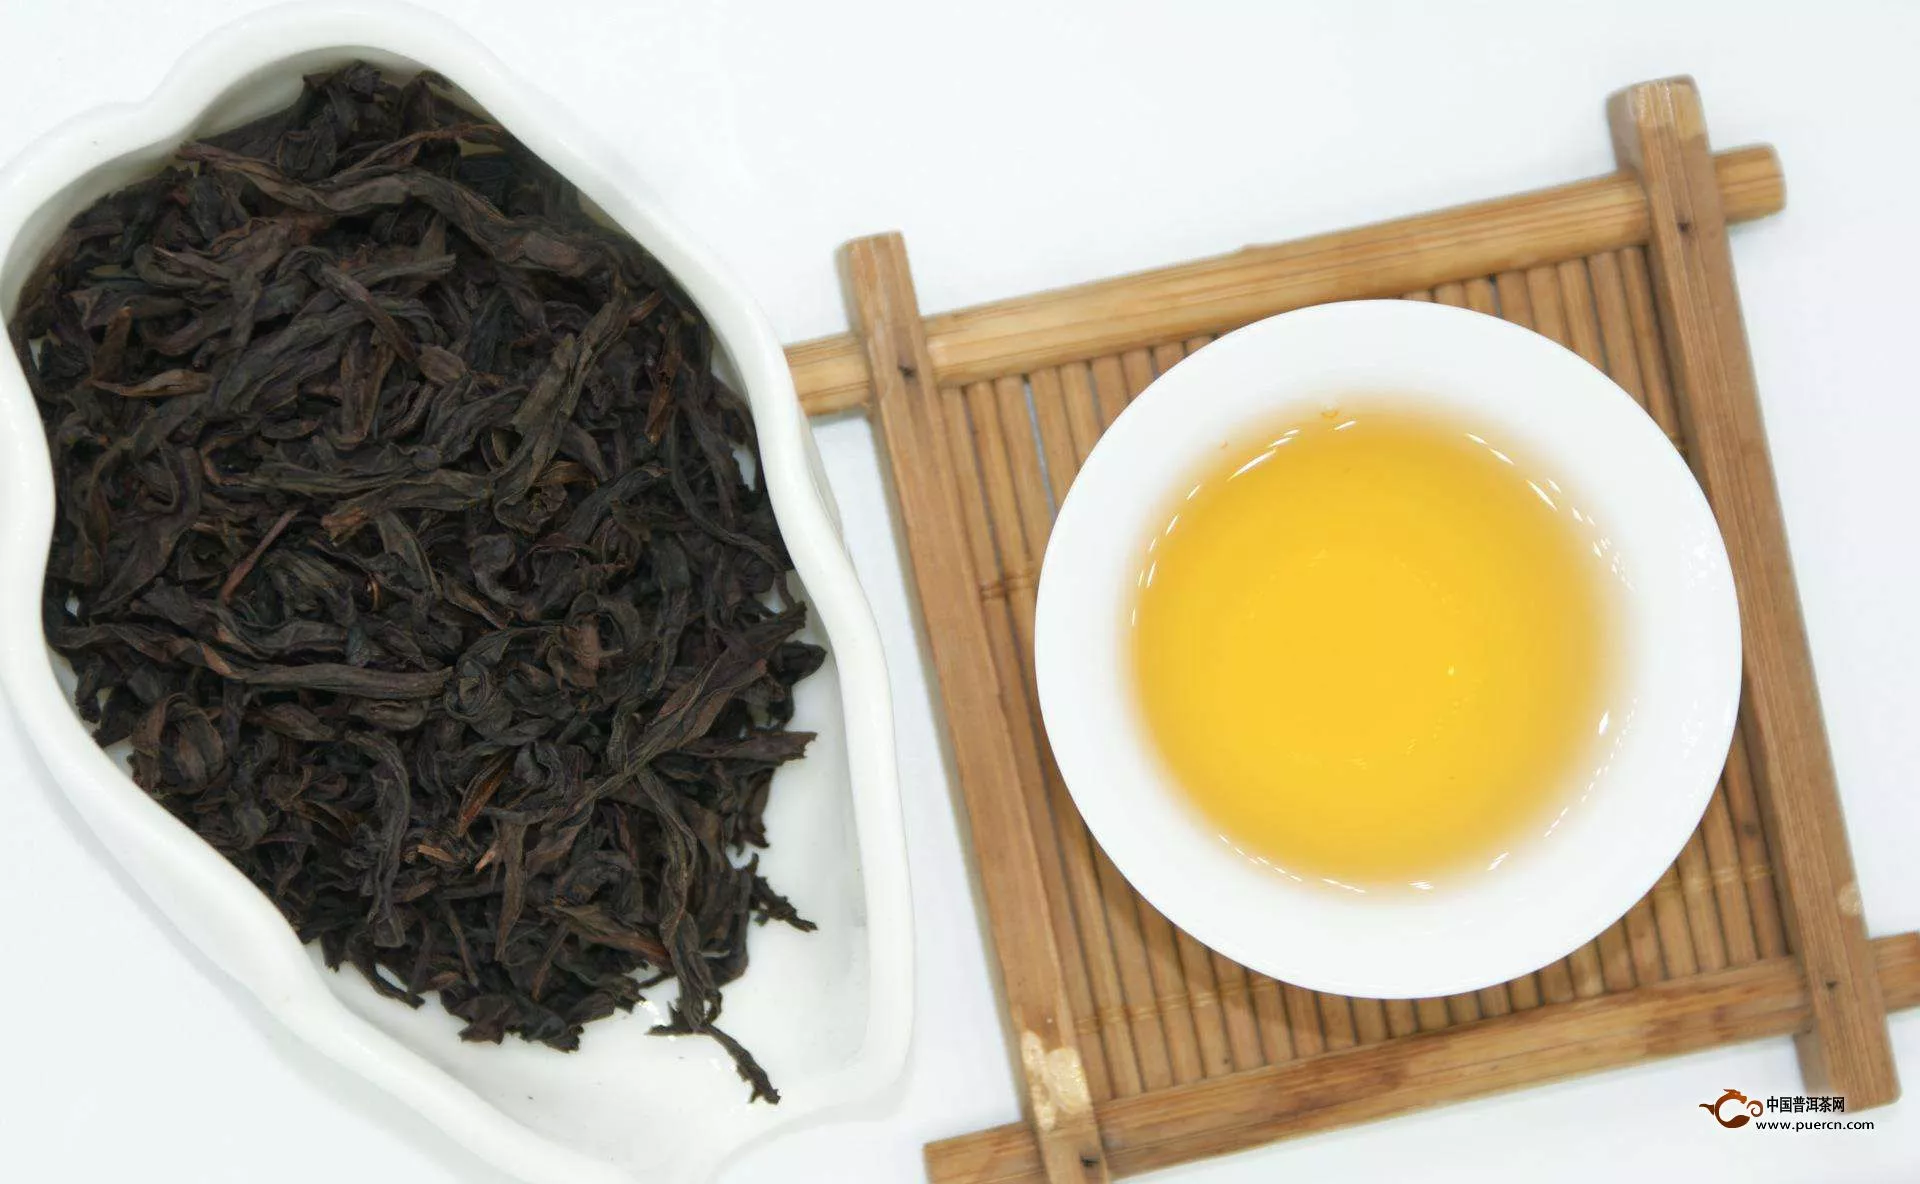 乌龙茶的品种包括哪些?